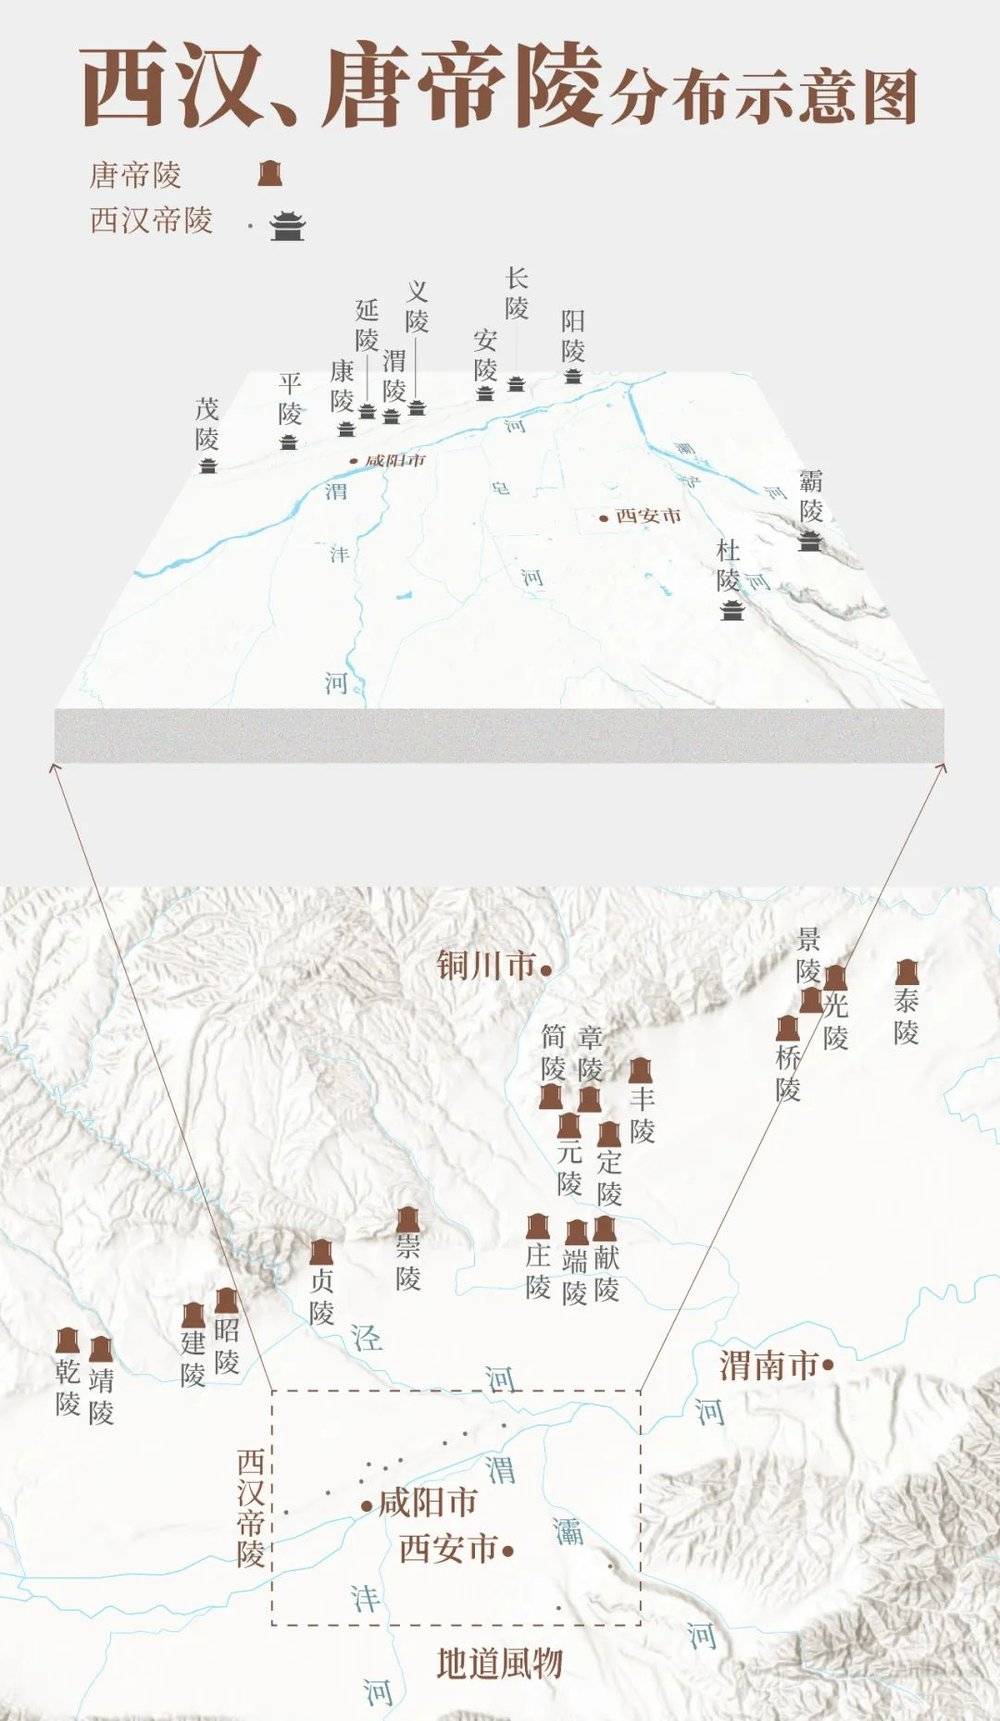 西汉、唐帝陵分布示意图，主要集中在渭河北岸。制图/孙璐